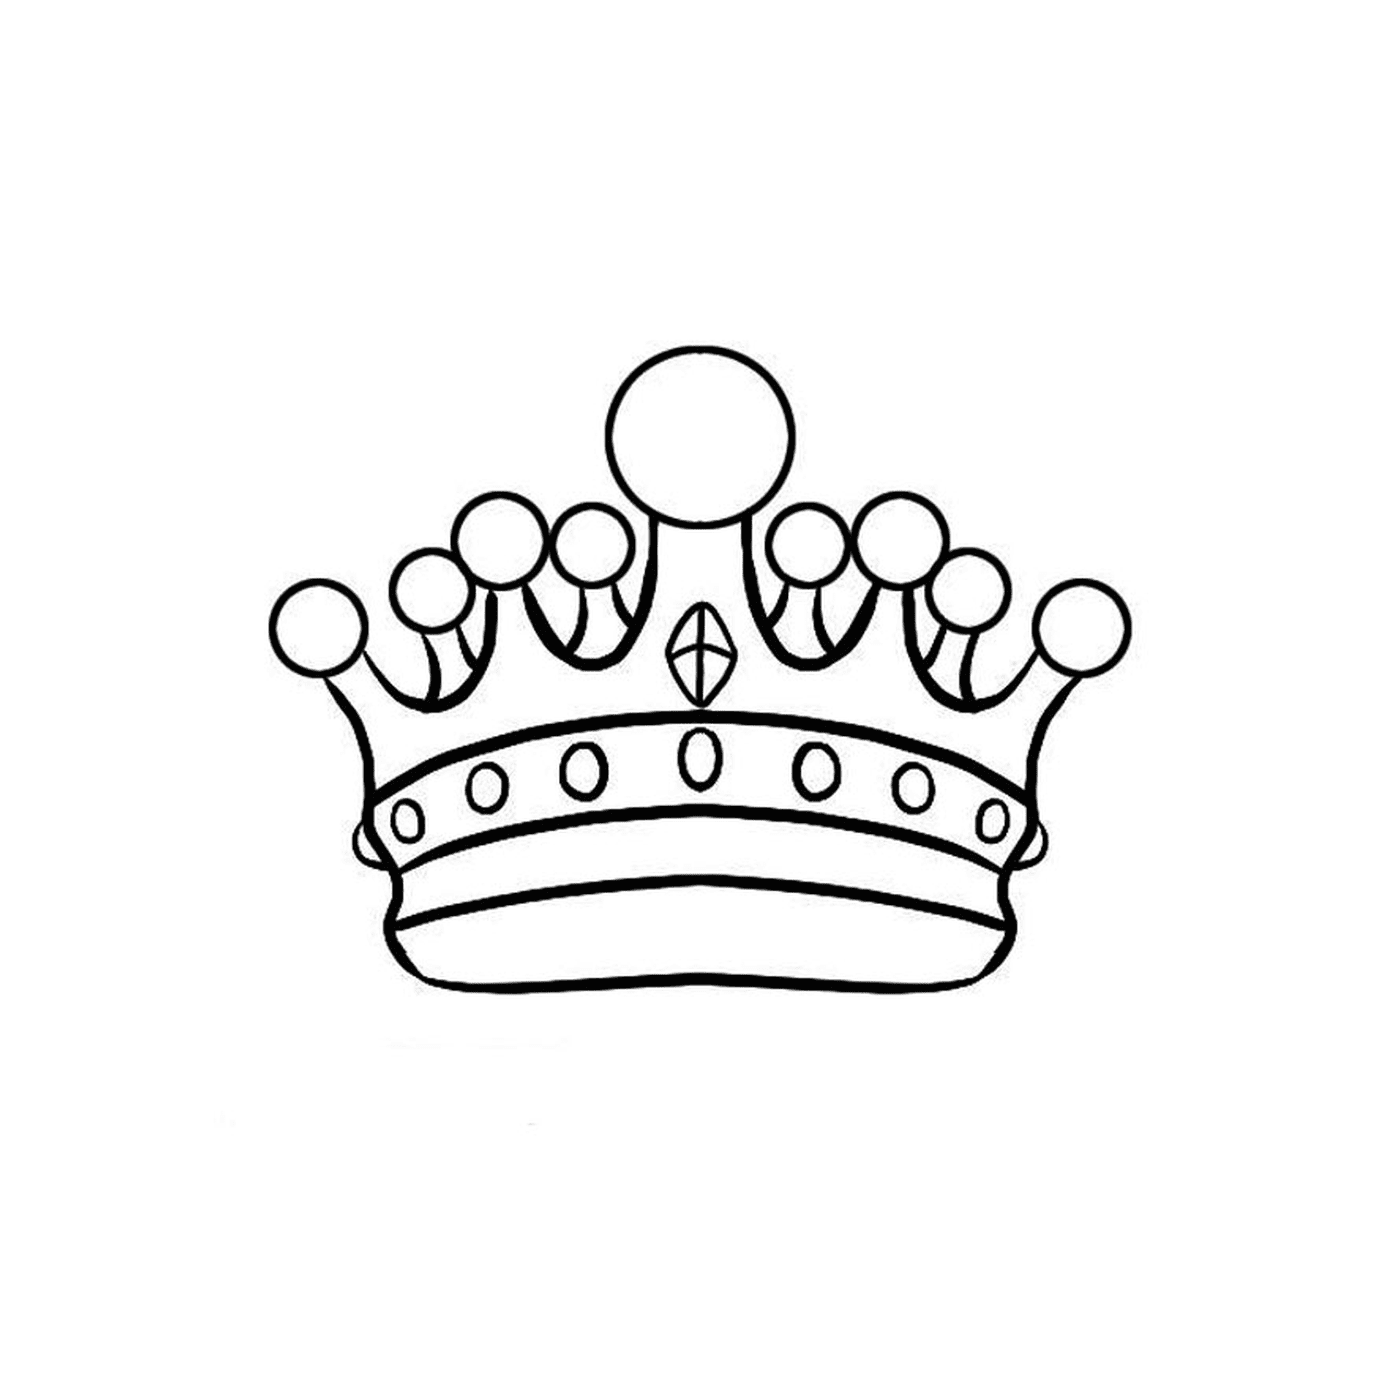  Una corona sobre un fondo blanco 